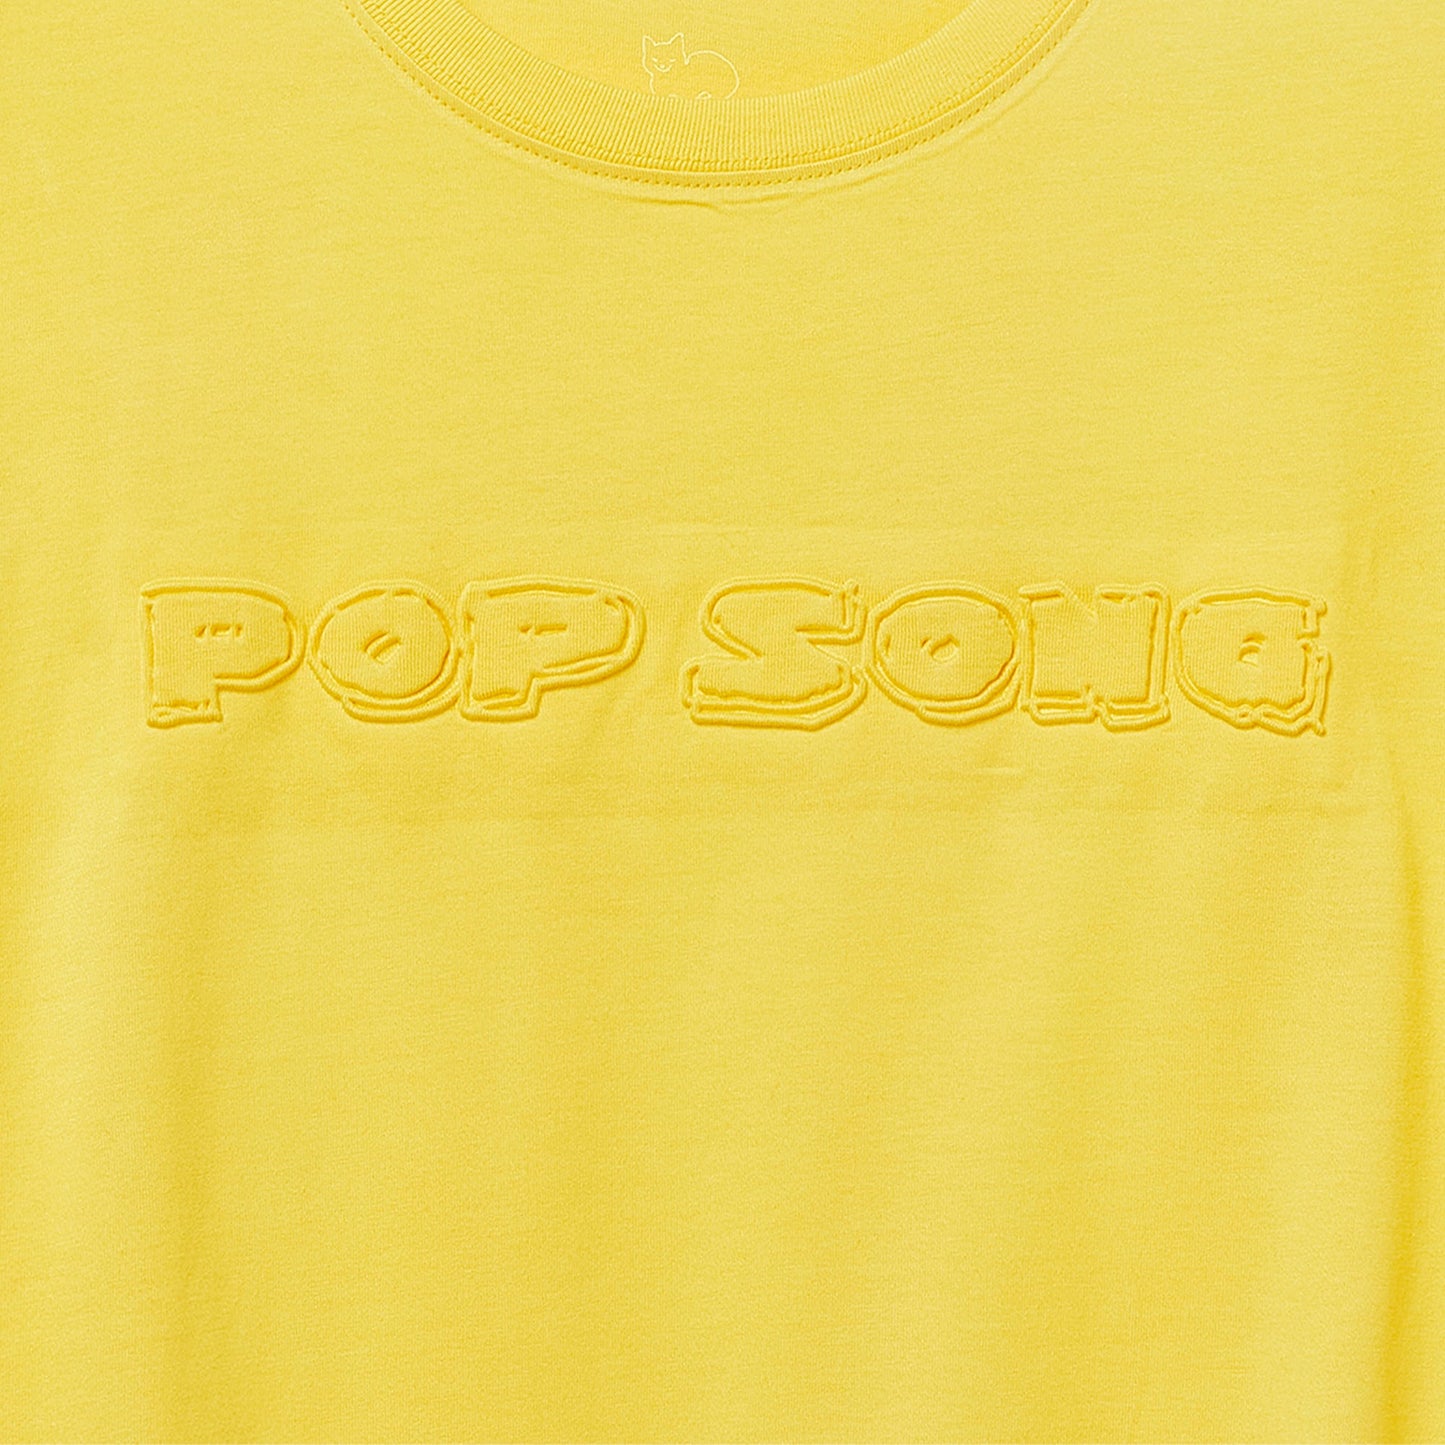 POP SONG Tシャツ